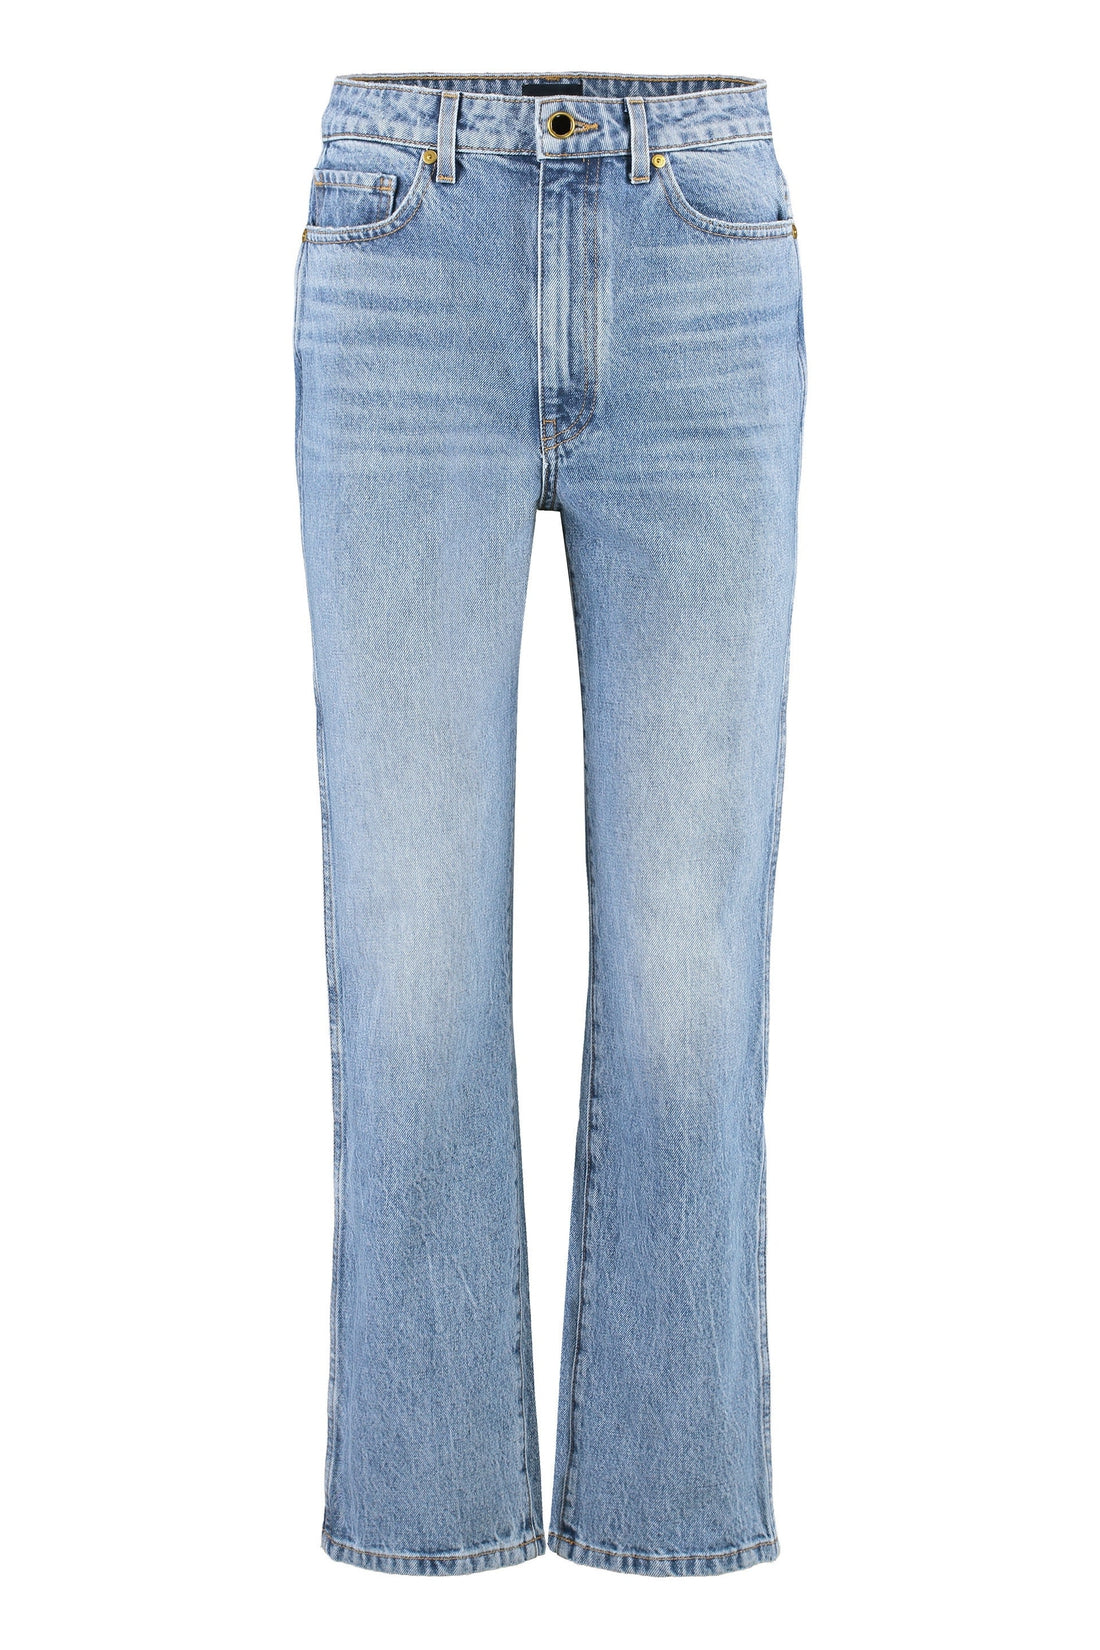 Khaite-OUTLET-SALE-Abigail straight leg jeans-ARCHIVIST